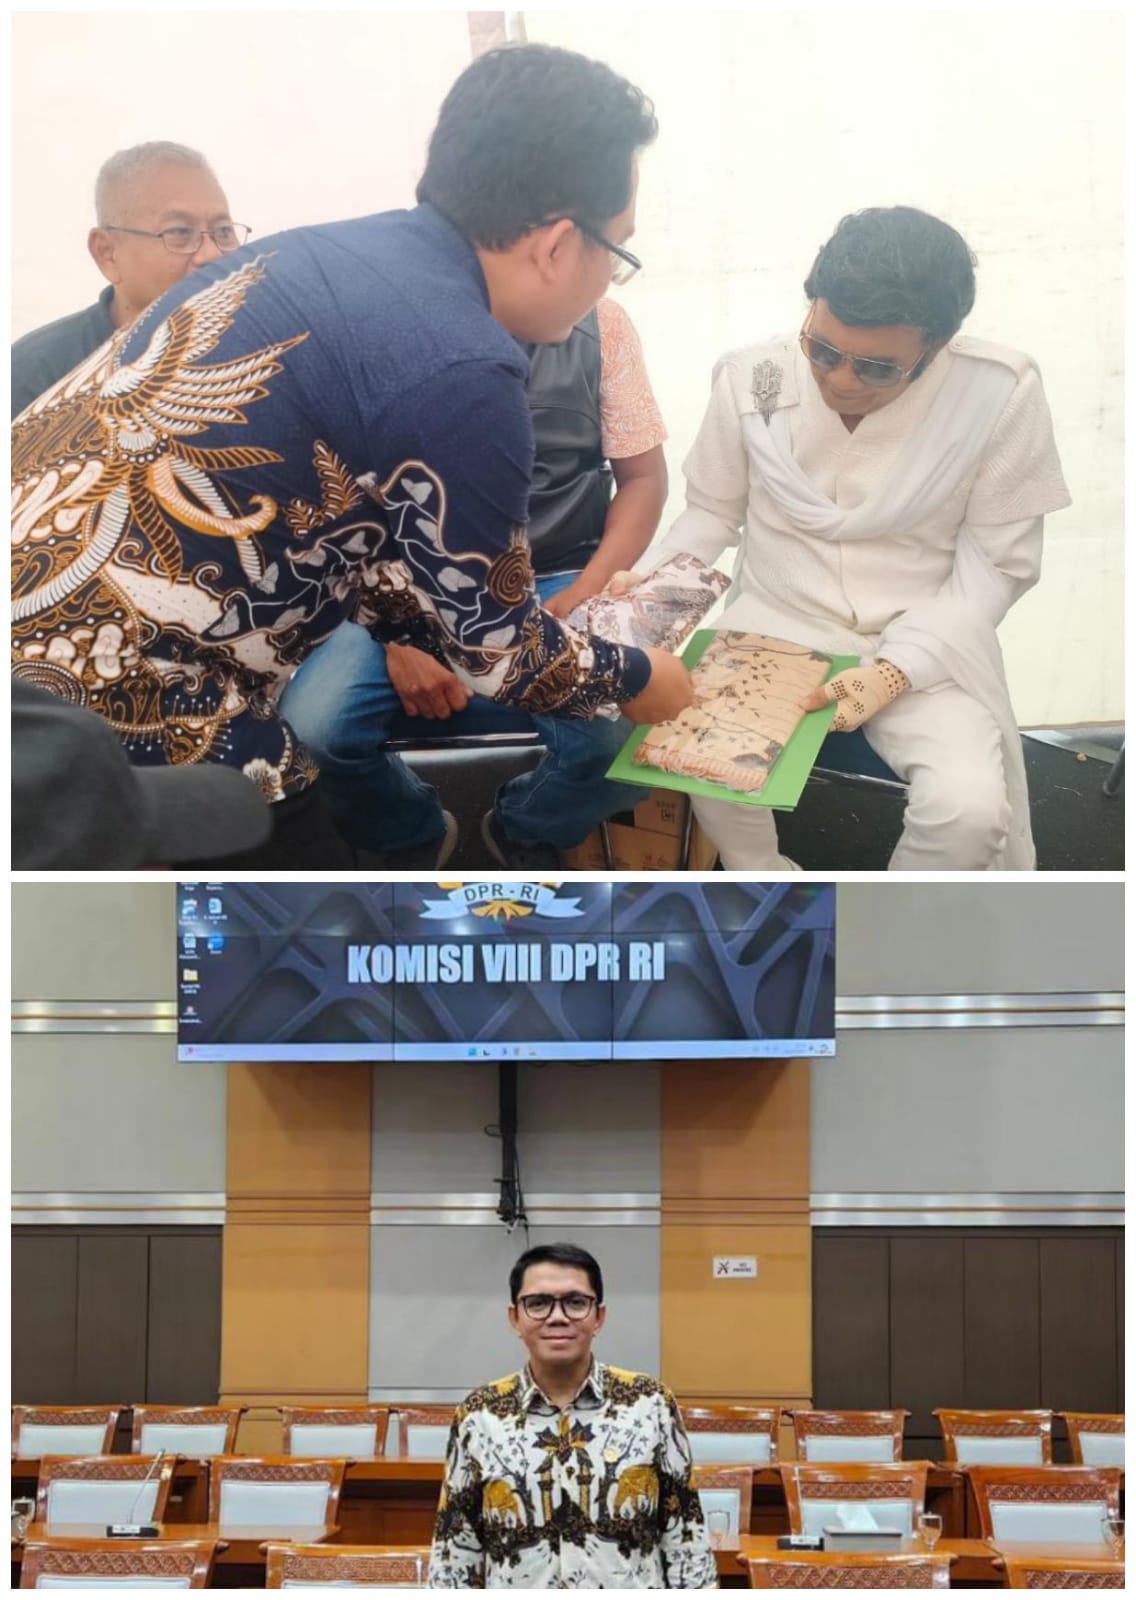 Dari Rhoma Irama "Raja Dangdut" Hingga ke Komisi VIII DPR RI, R Hamzaiya Kenalkan Budaya Batik Singa Barong